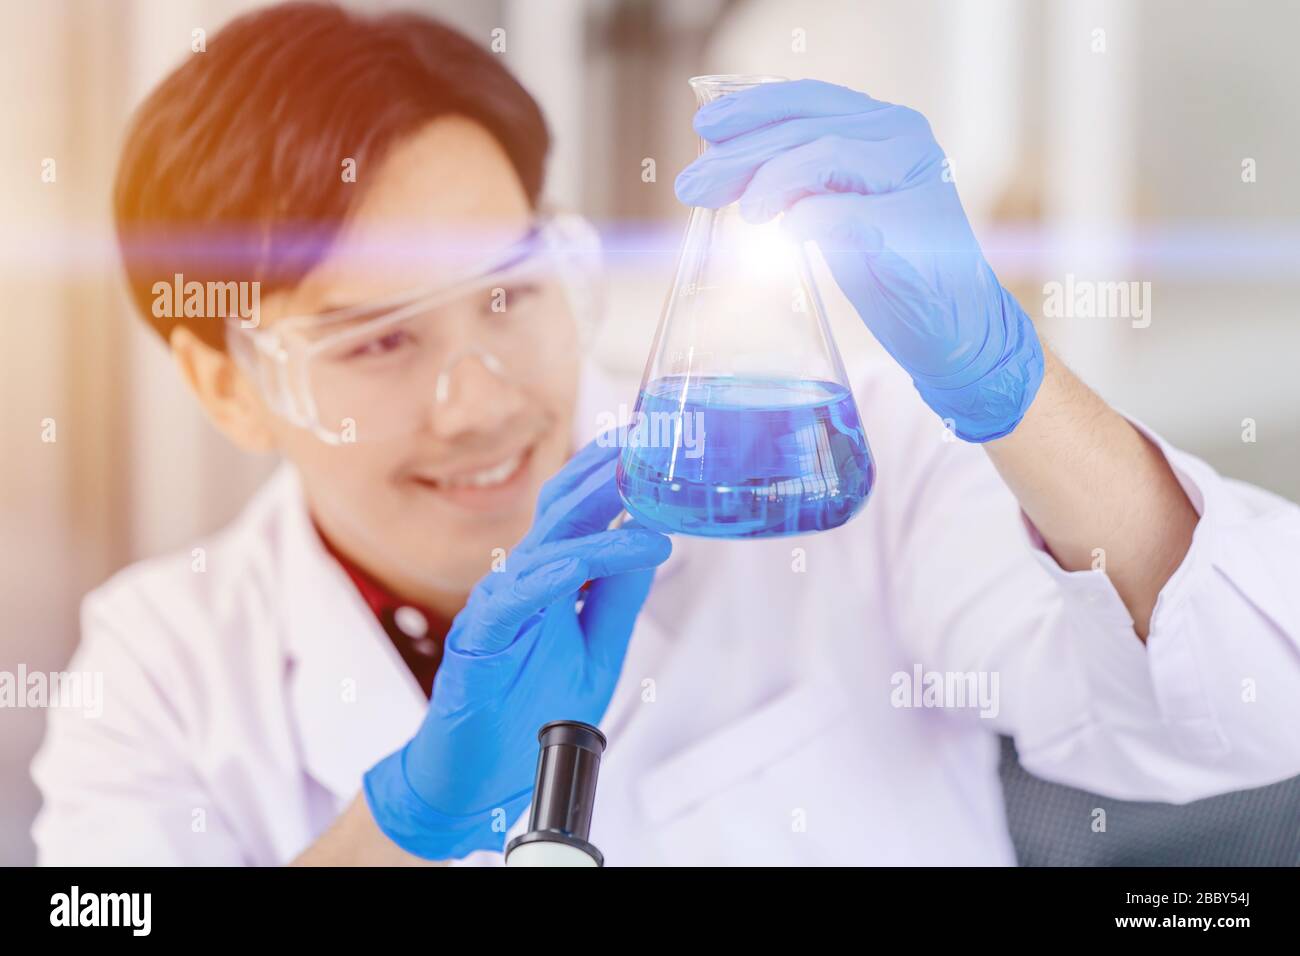 Un scientifique heureux de découvrir avec succès de nouveaux liquides chimiques de formule anti-virus dans le laboratoire des sciences médicales de l'hôpital Banque D'Images